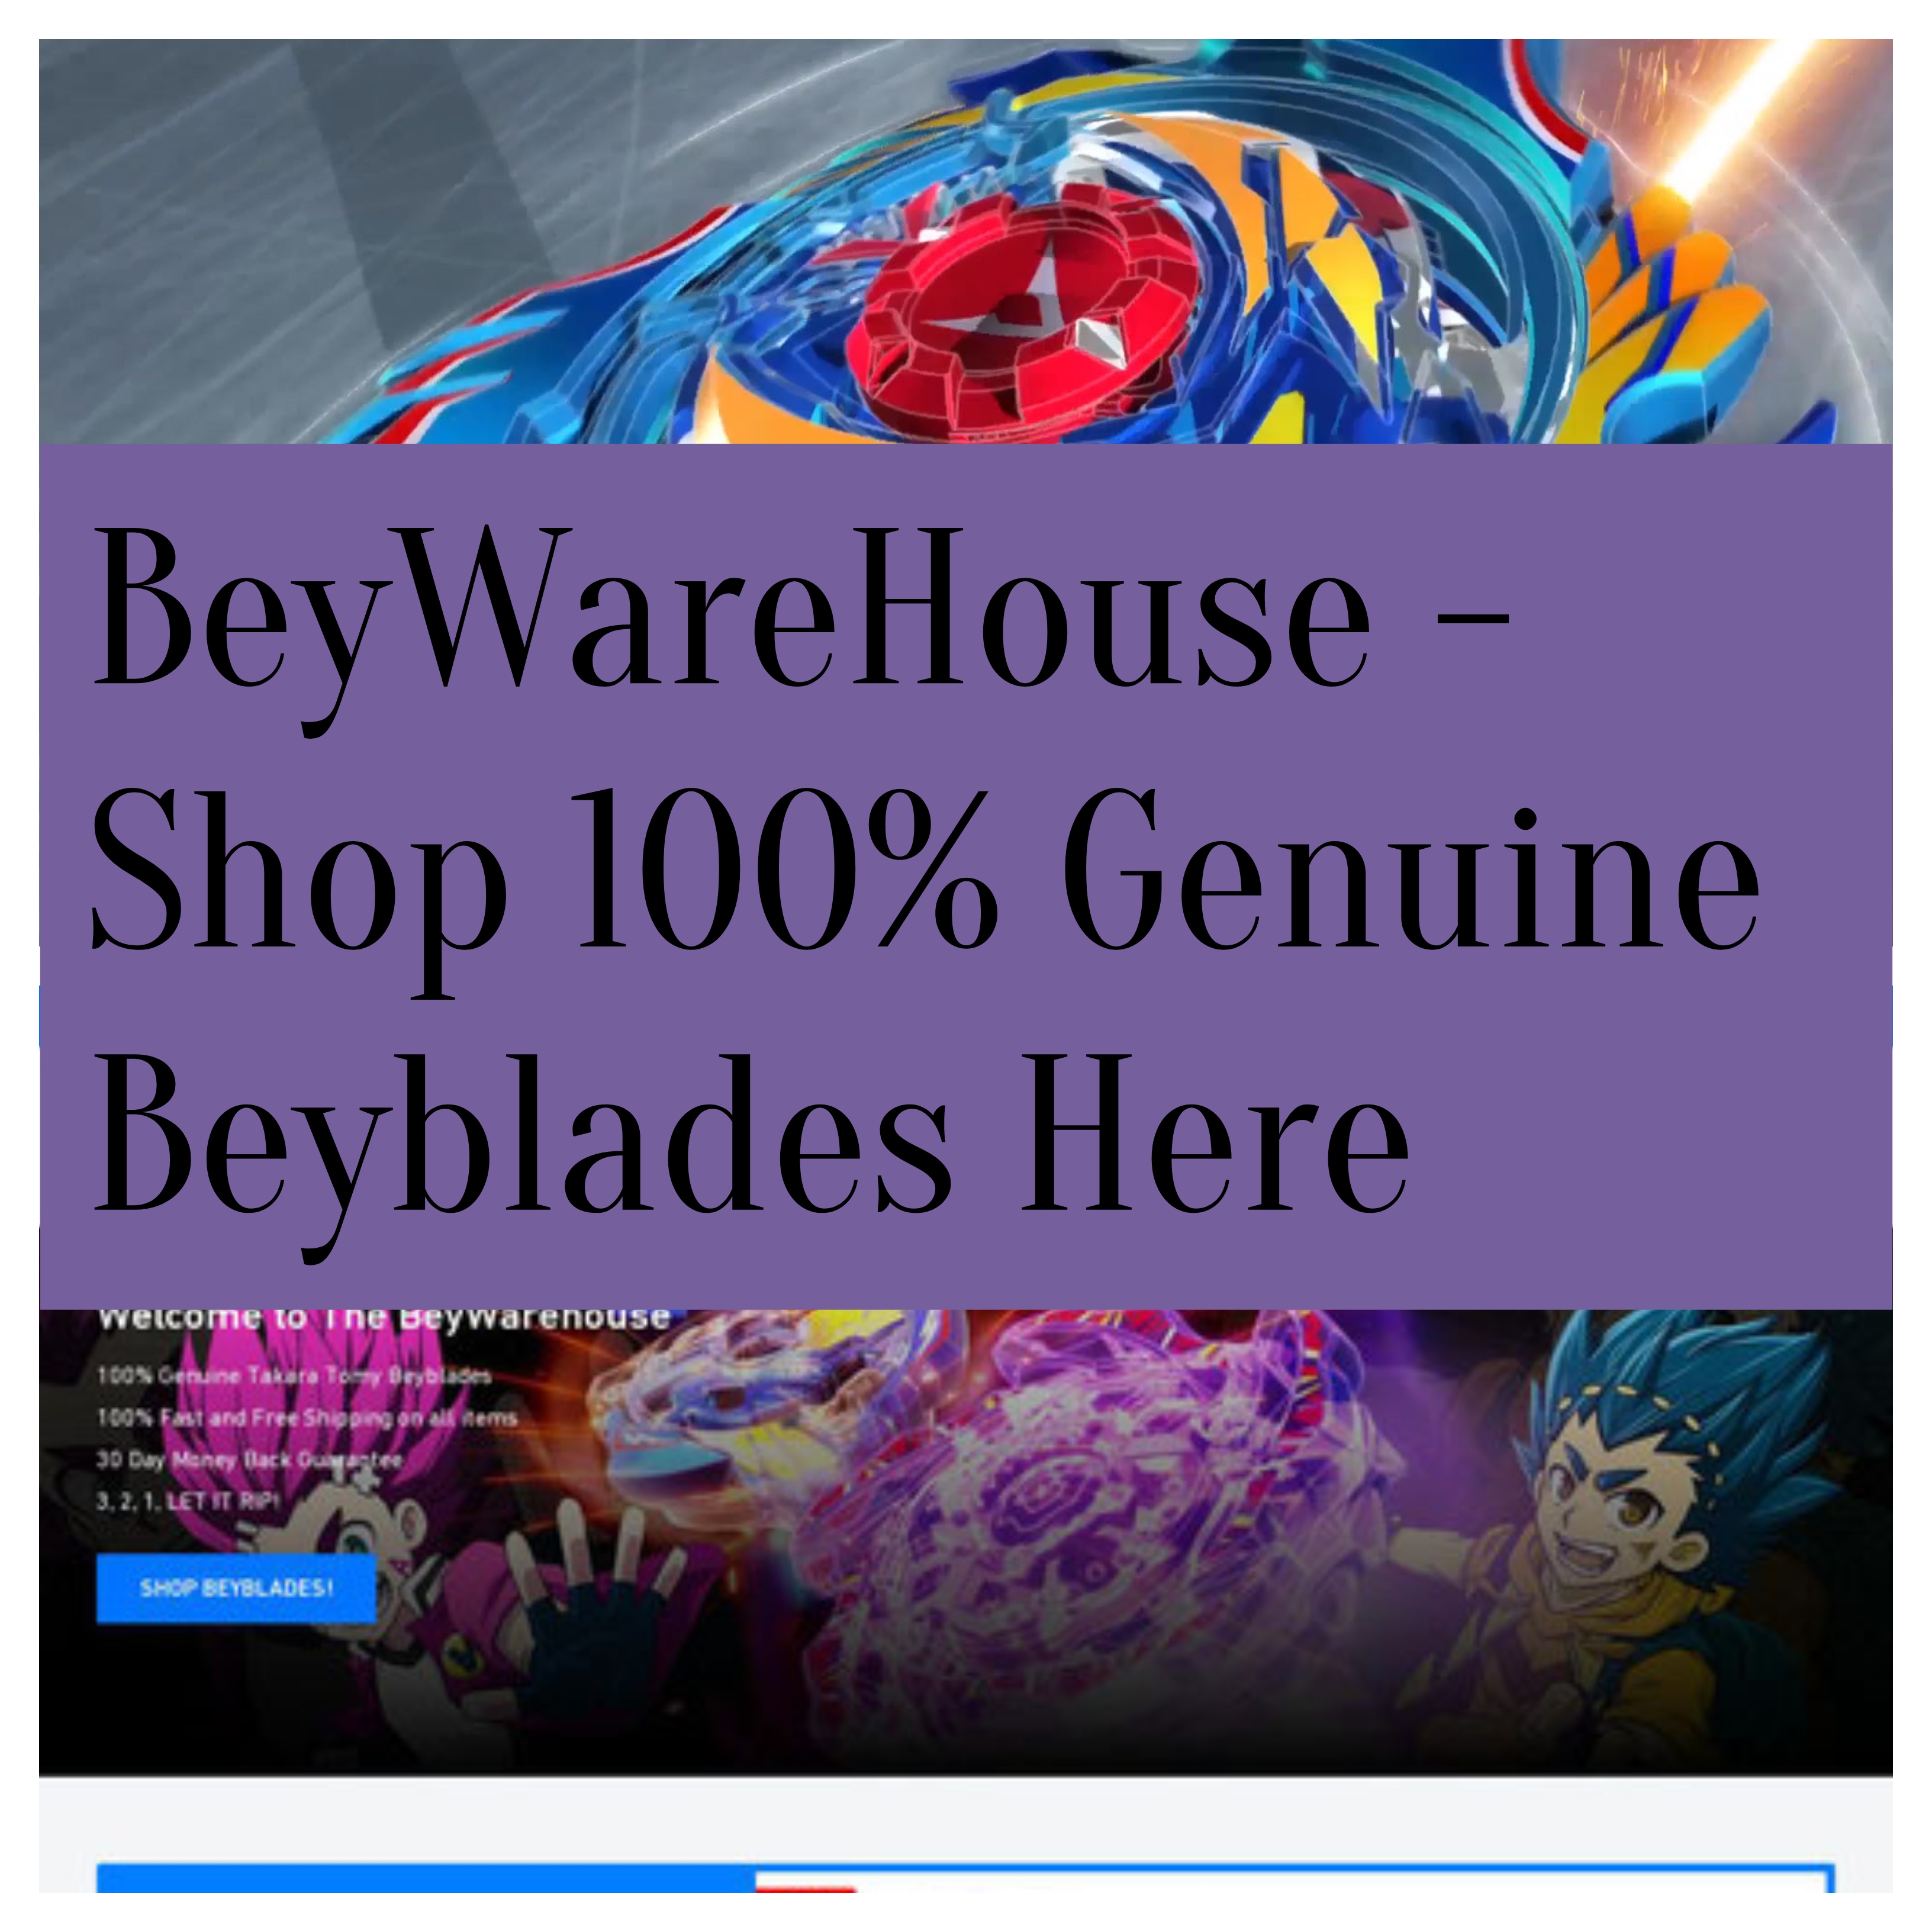 BeyWareHouse - Shop 100% Genuine Beyblades Here